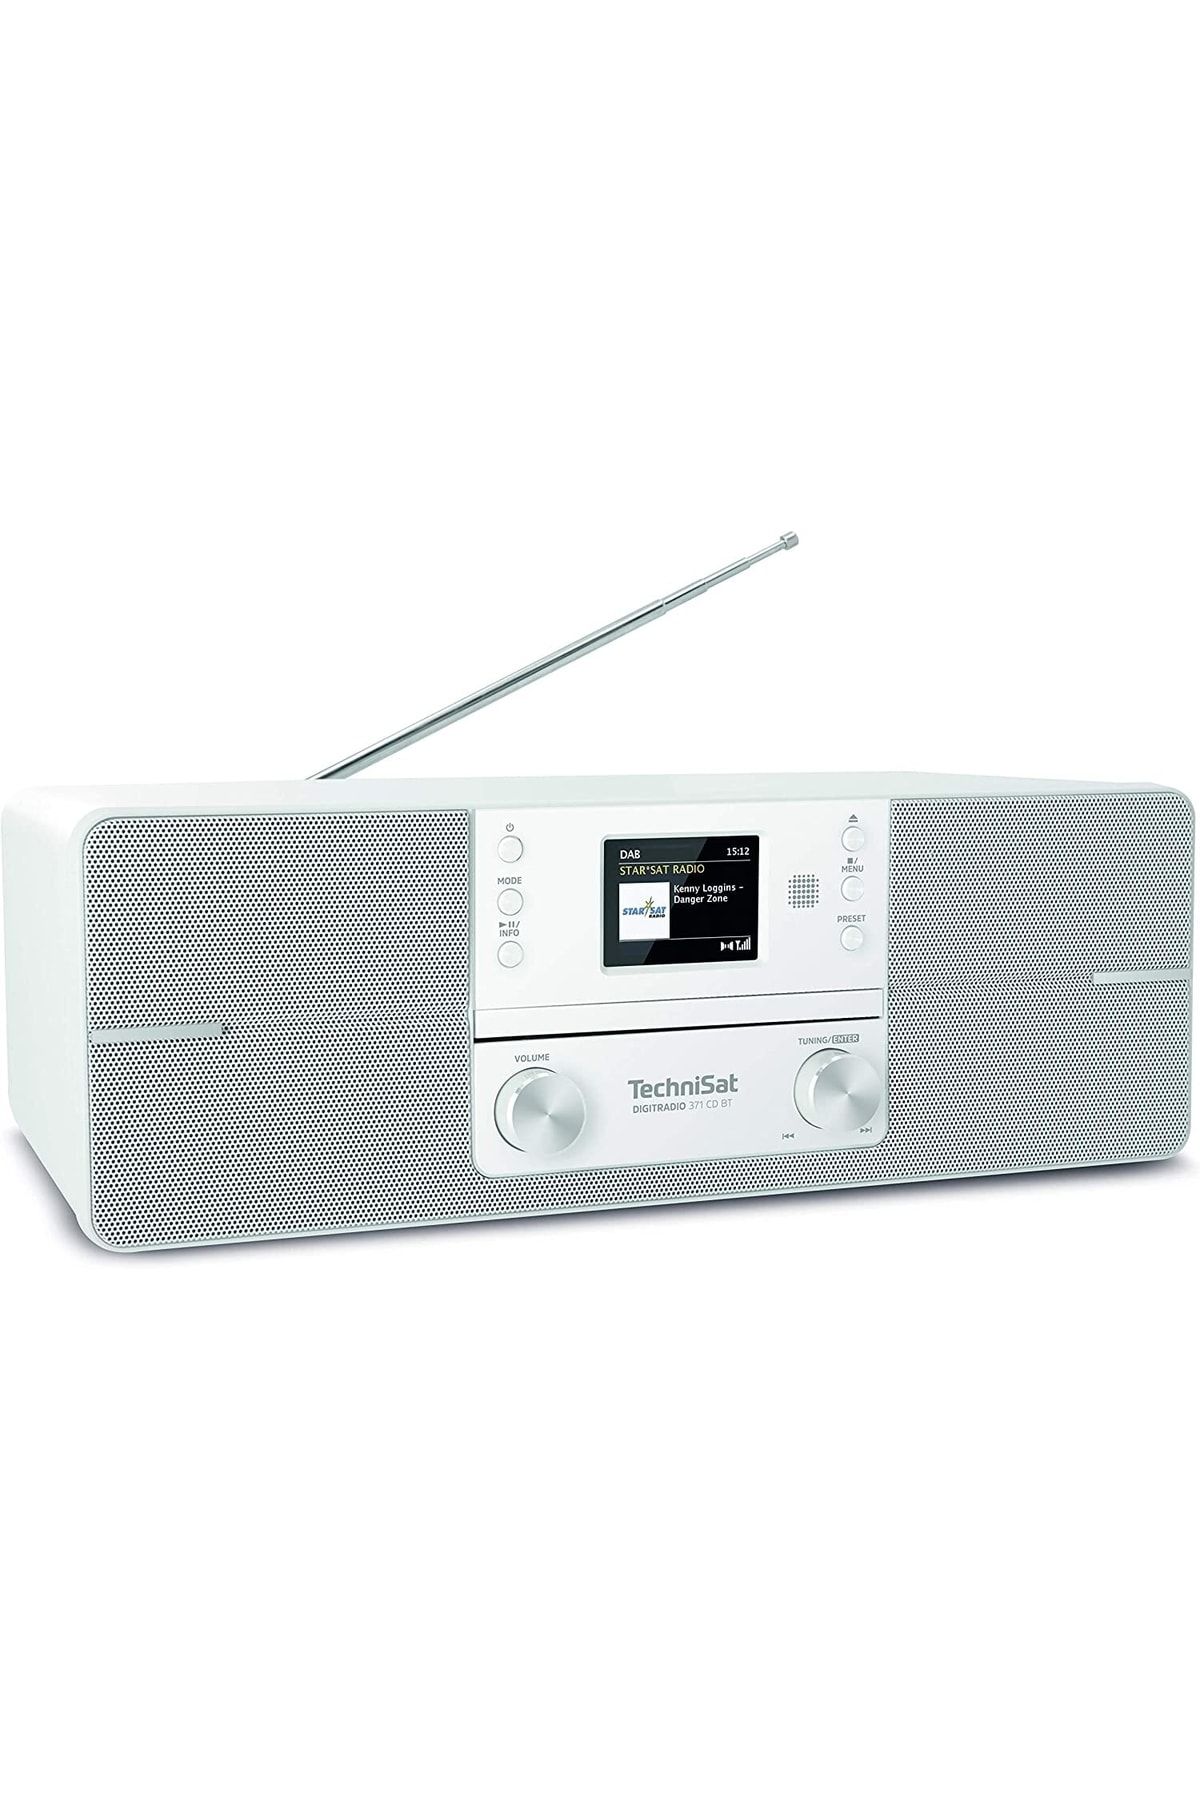 Franco Digitradio 371 Cd Bt Radyo Stereo Dijital Dab+, Fm, Cd Çalar